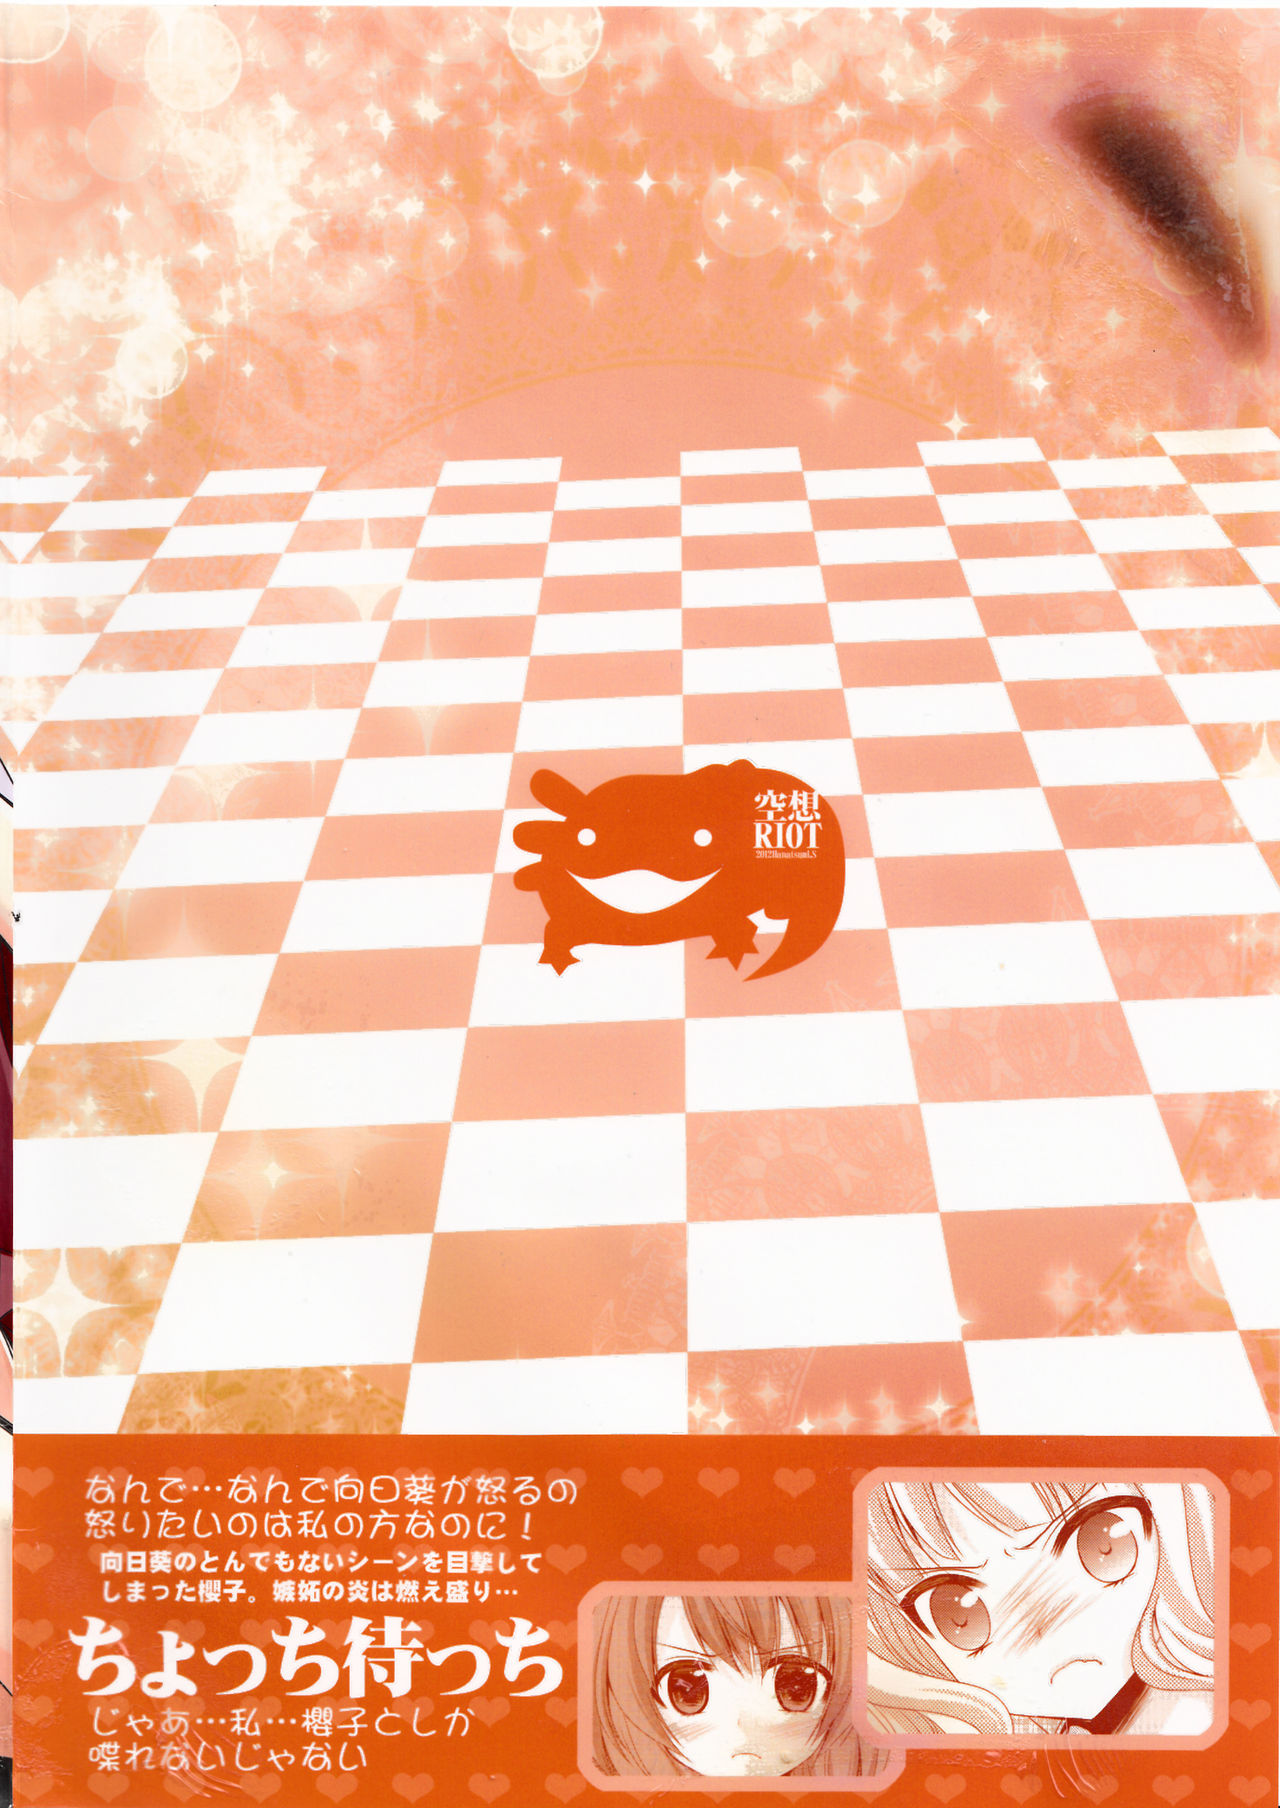 [Kuusou RIOT (Sakura Hanatsumi)] Love Miman Sono 2 (Yuruyuri) [2012-08-25] [空想RIOT (佐倉はなつみ)] らぶ未満 その2 (ゆるゆり) [2012年8月25日]